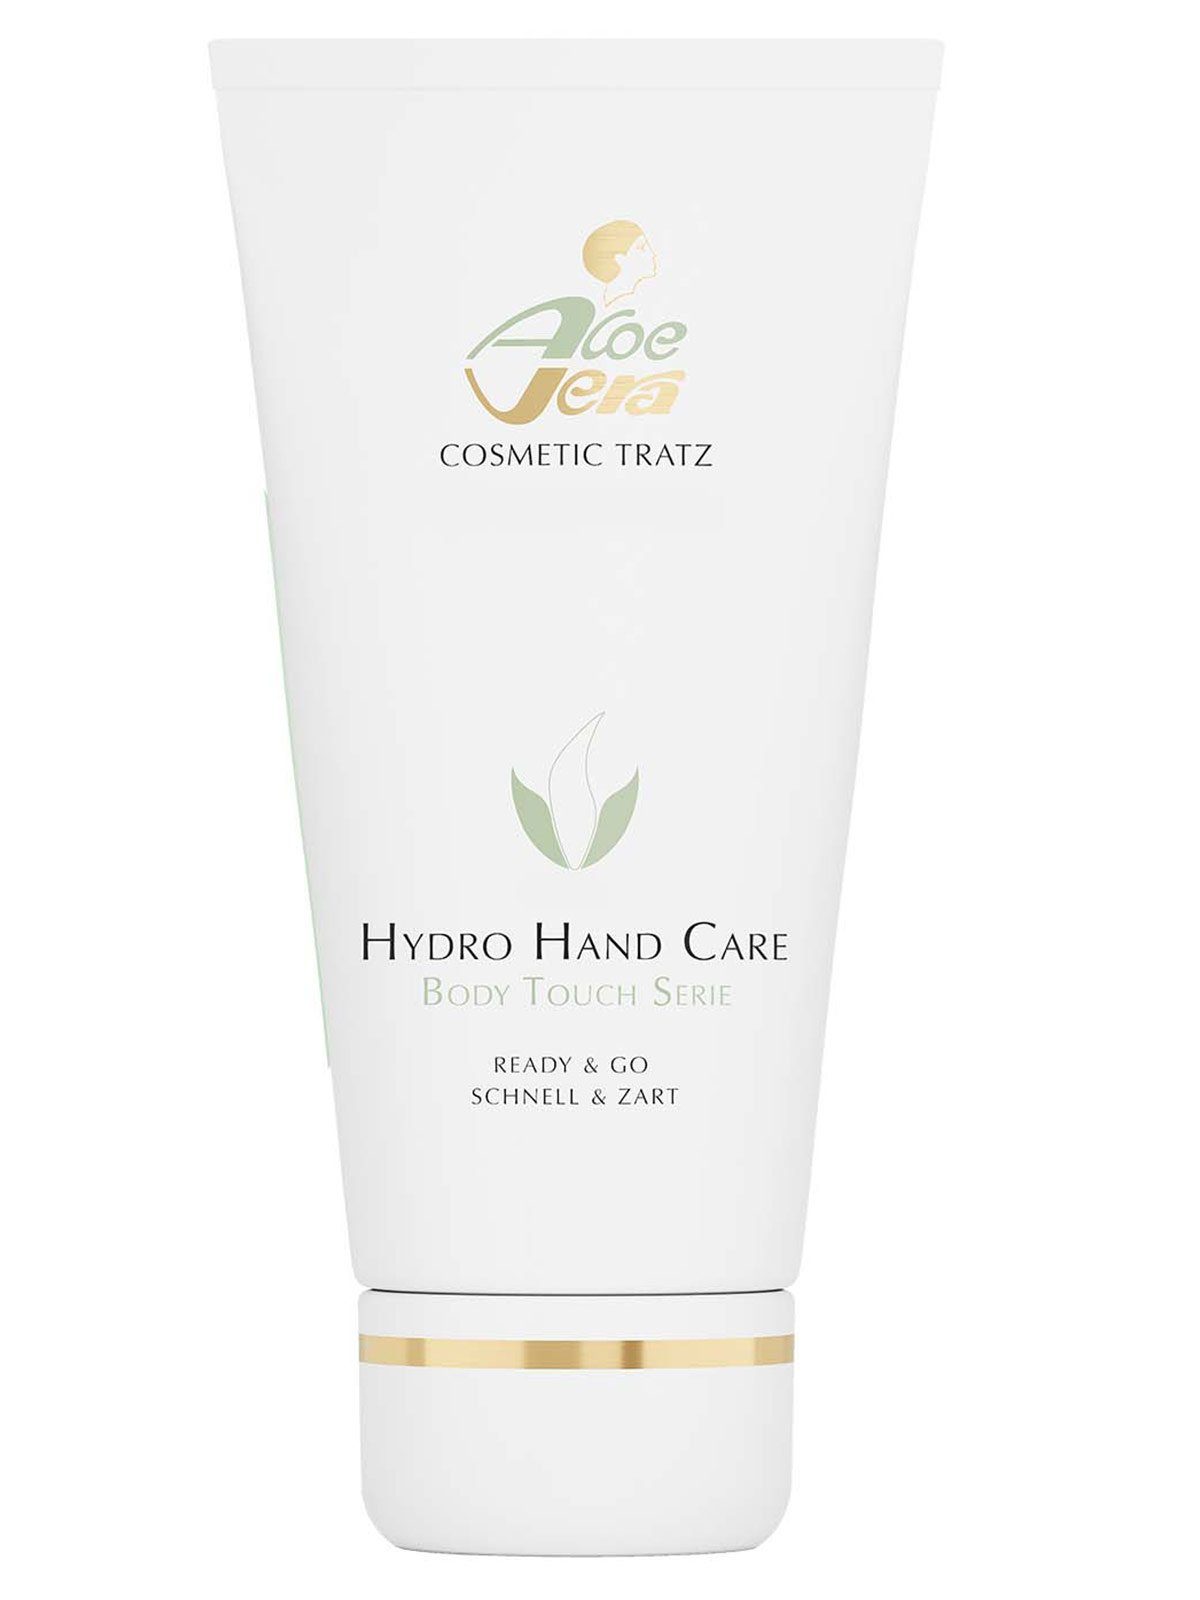 Hydro Handcreme Vera Aloe Cosmetic Handcare Touch Tratz Serie, Body 1-tlg.